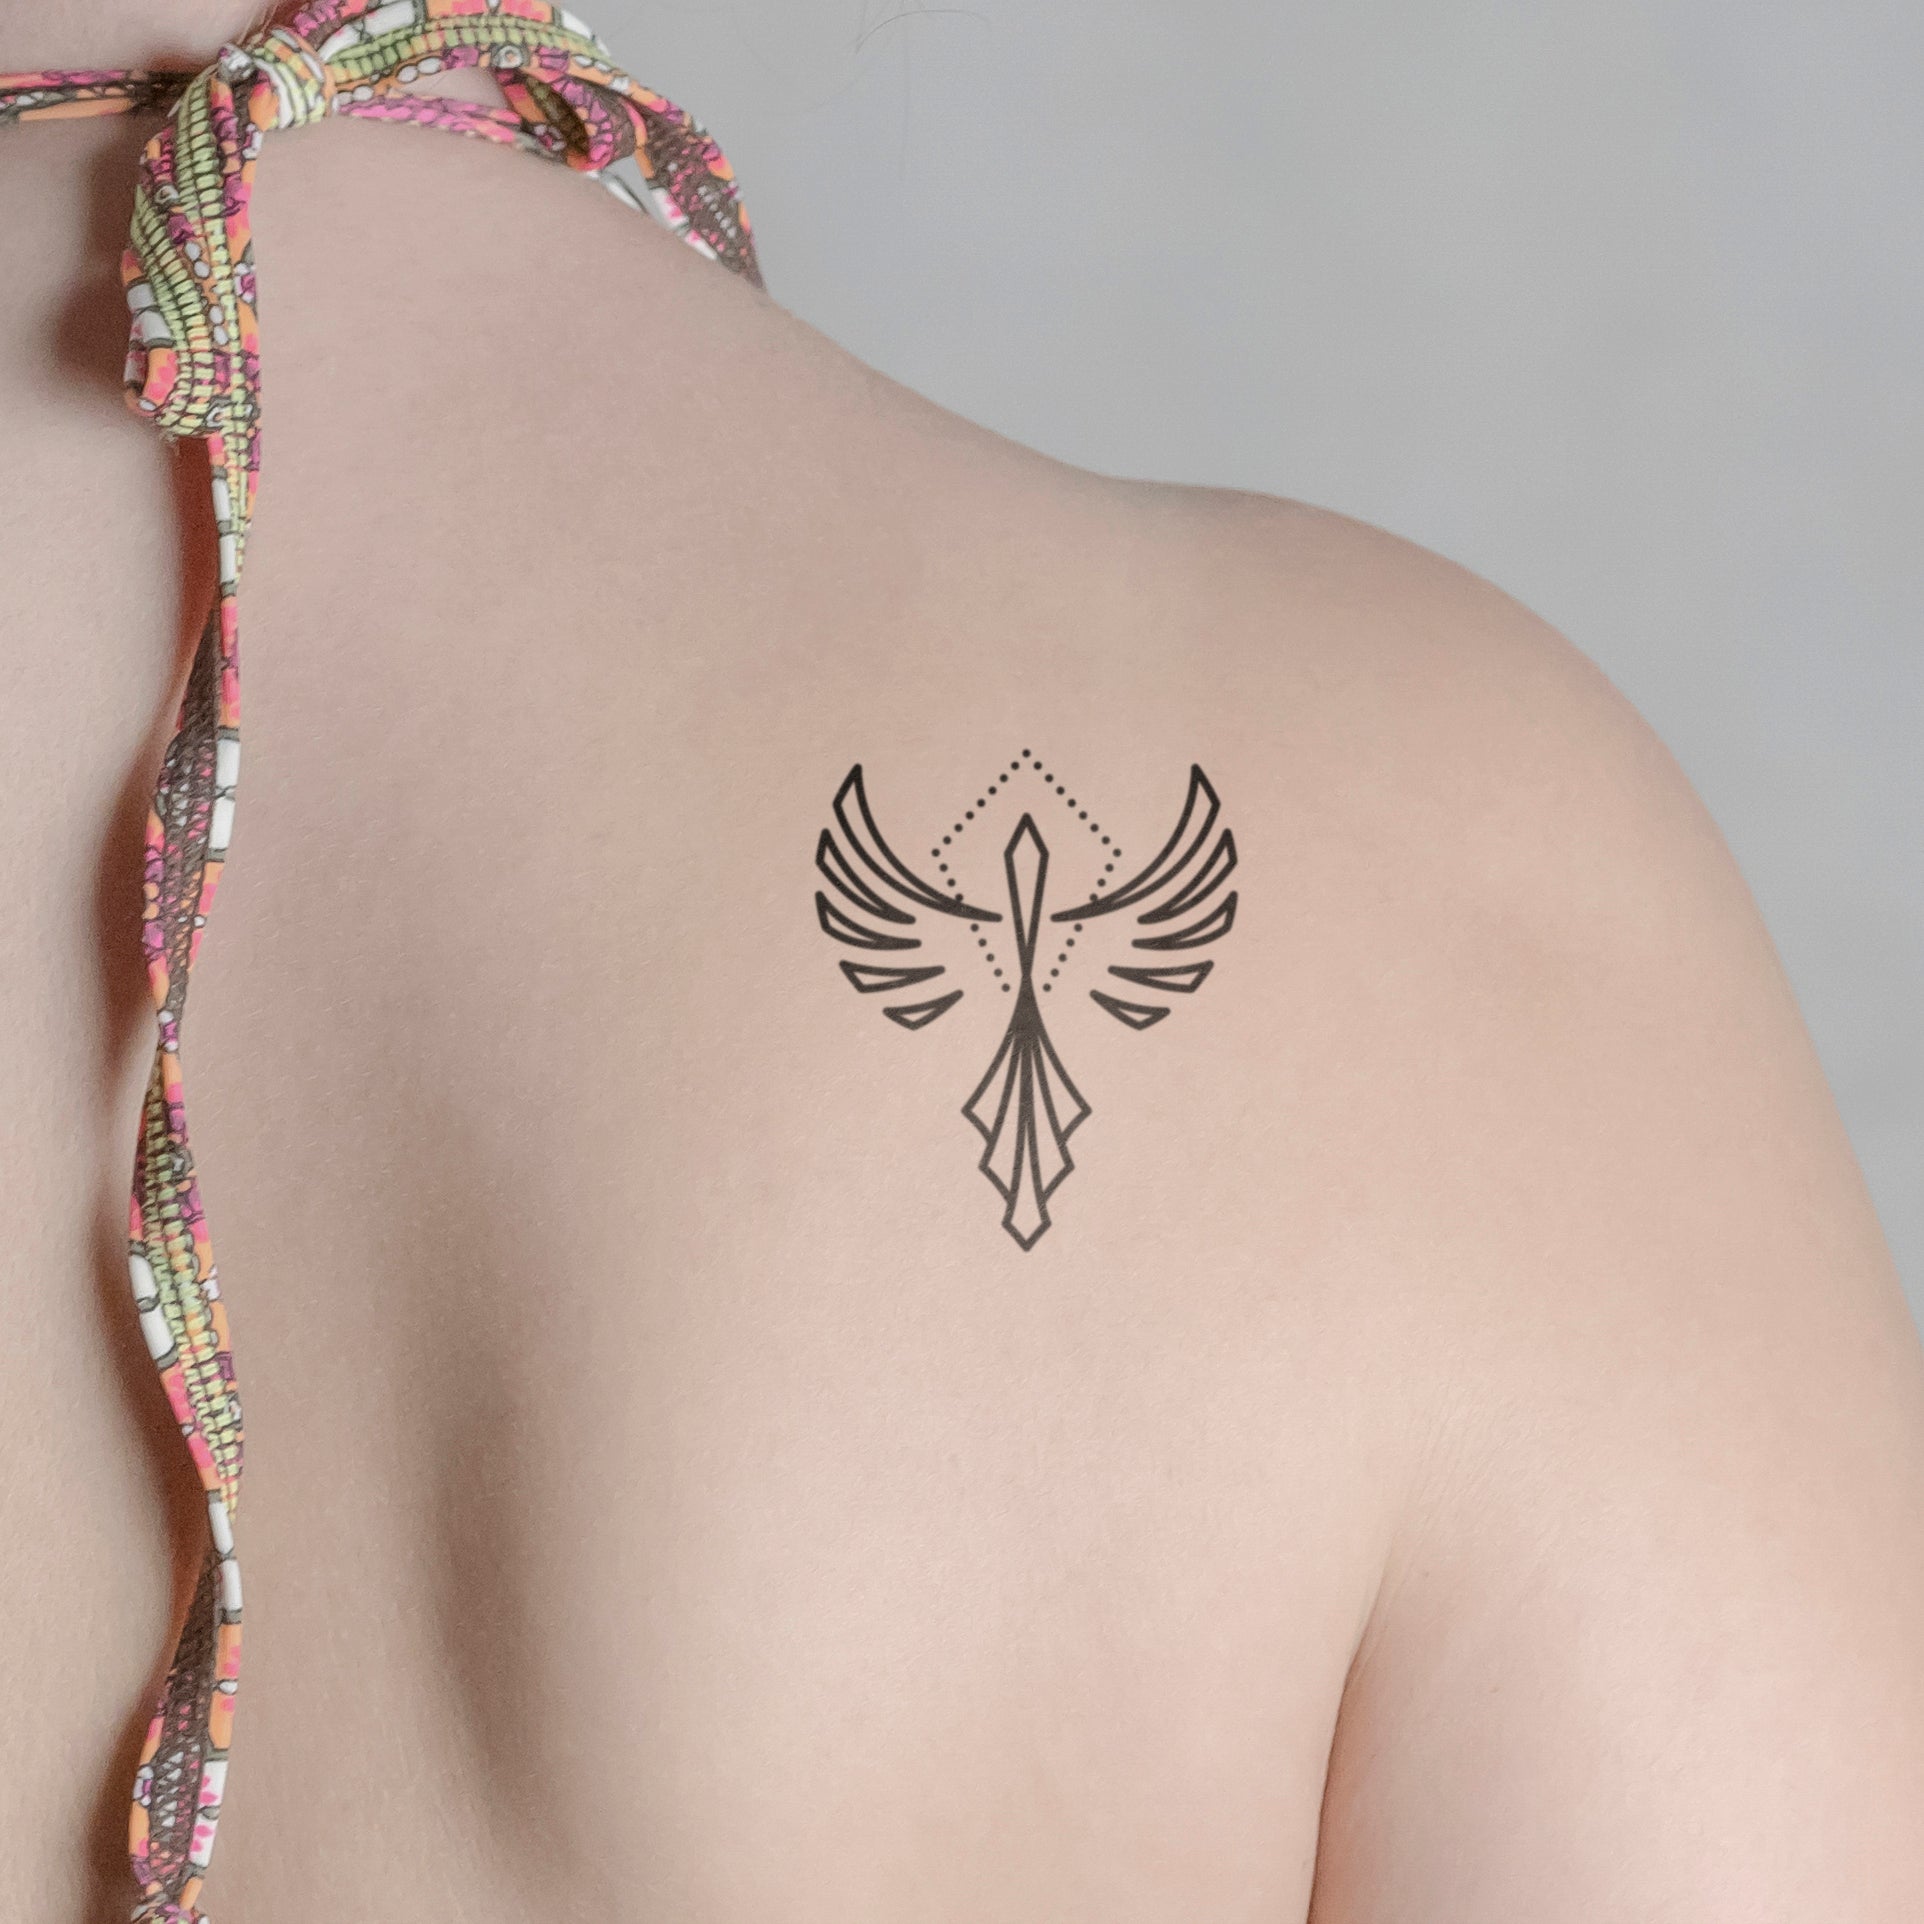 Abstrakter Phönix Tattoo von minink, der Marke für temporäre Tattoos.